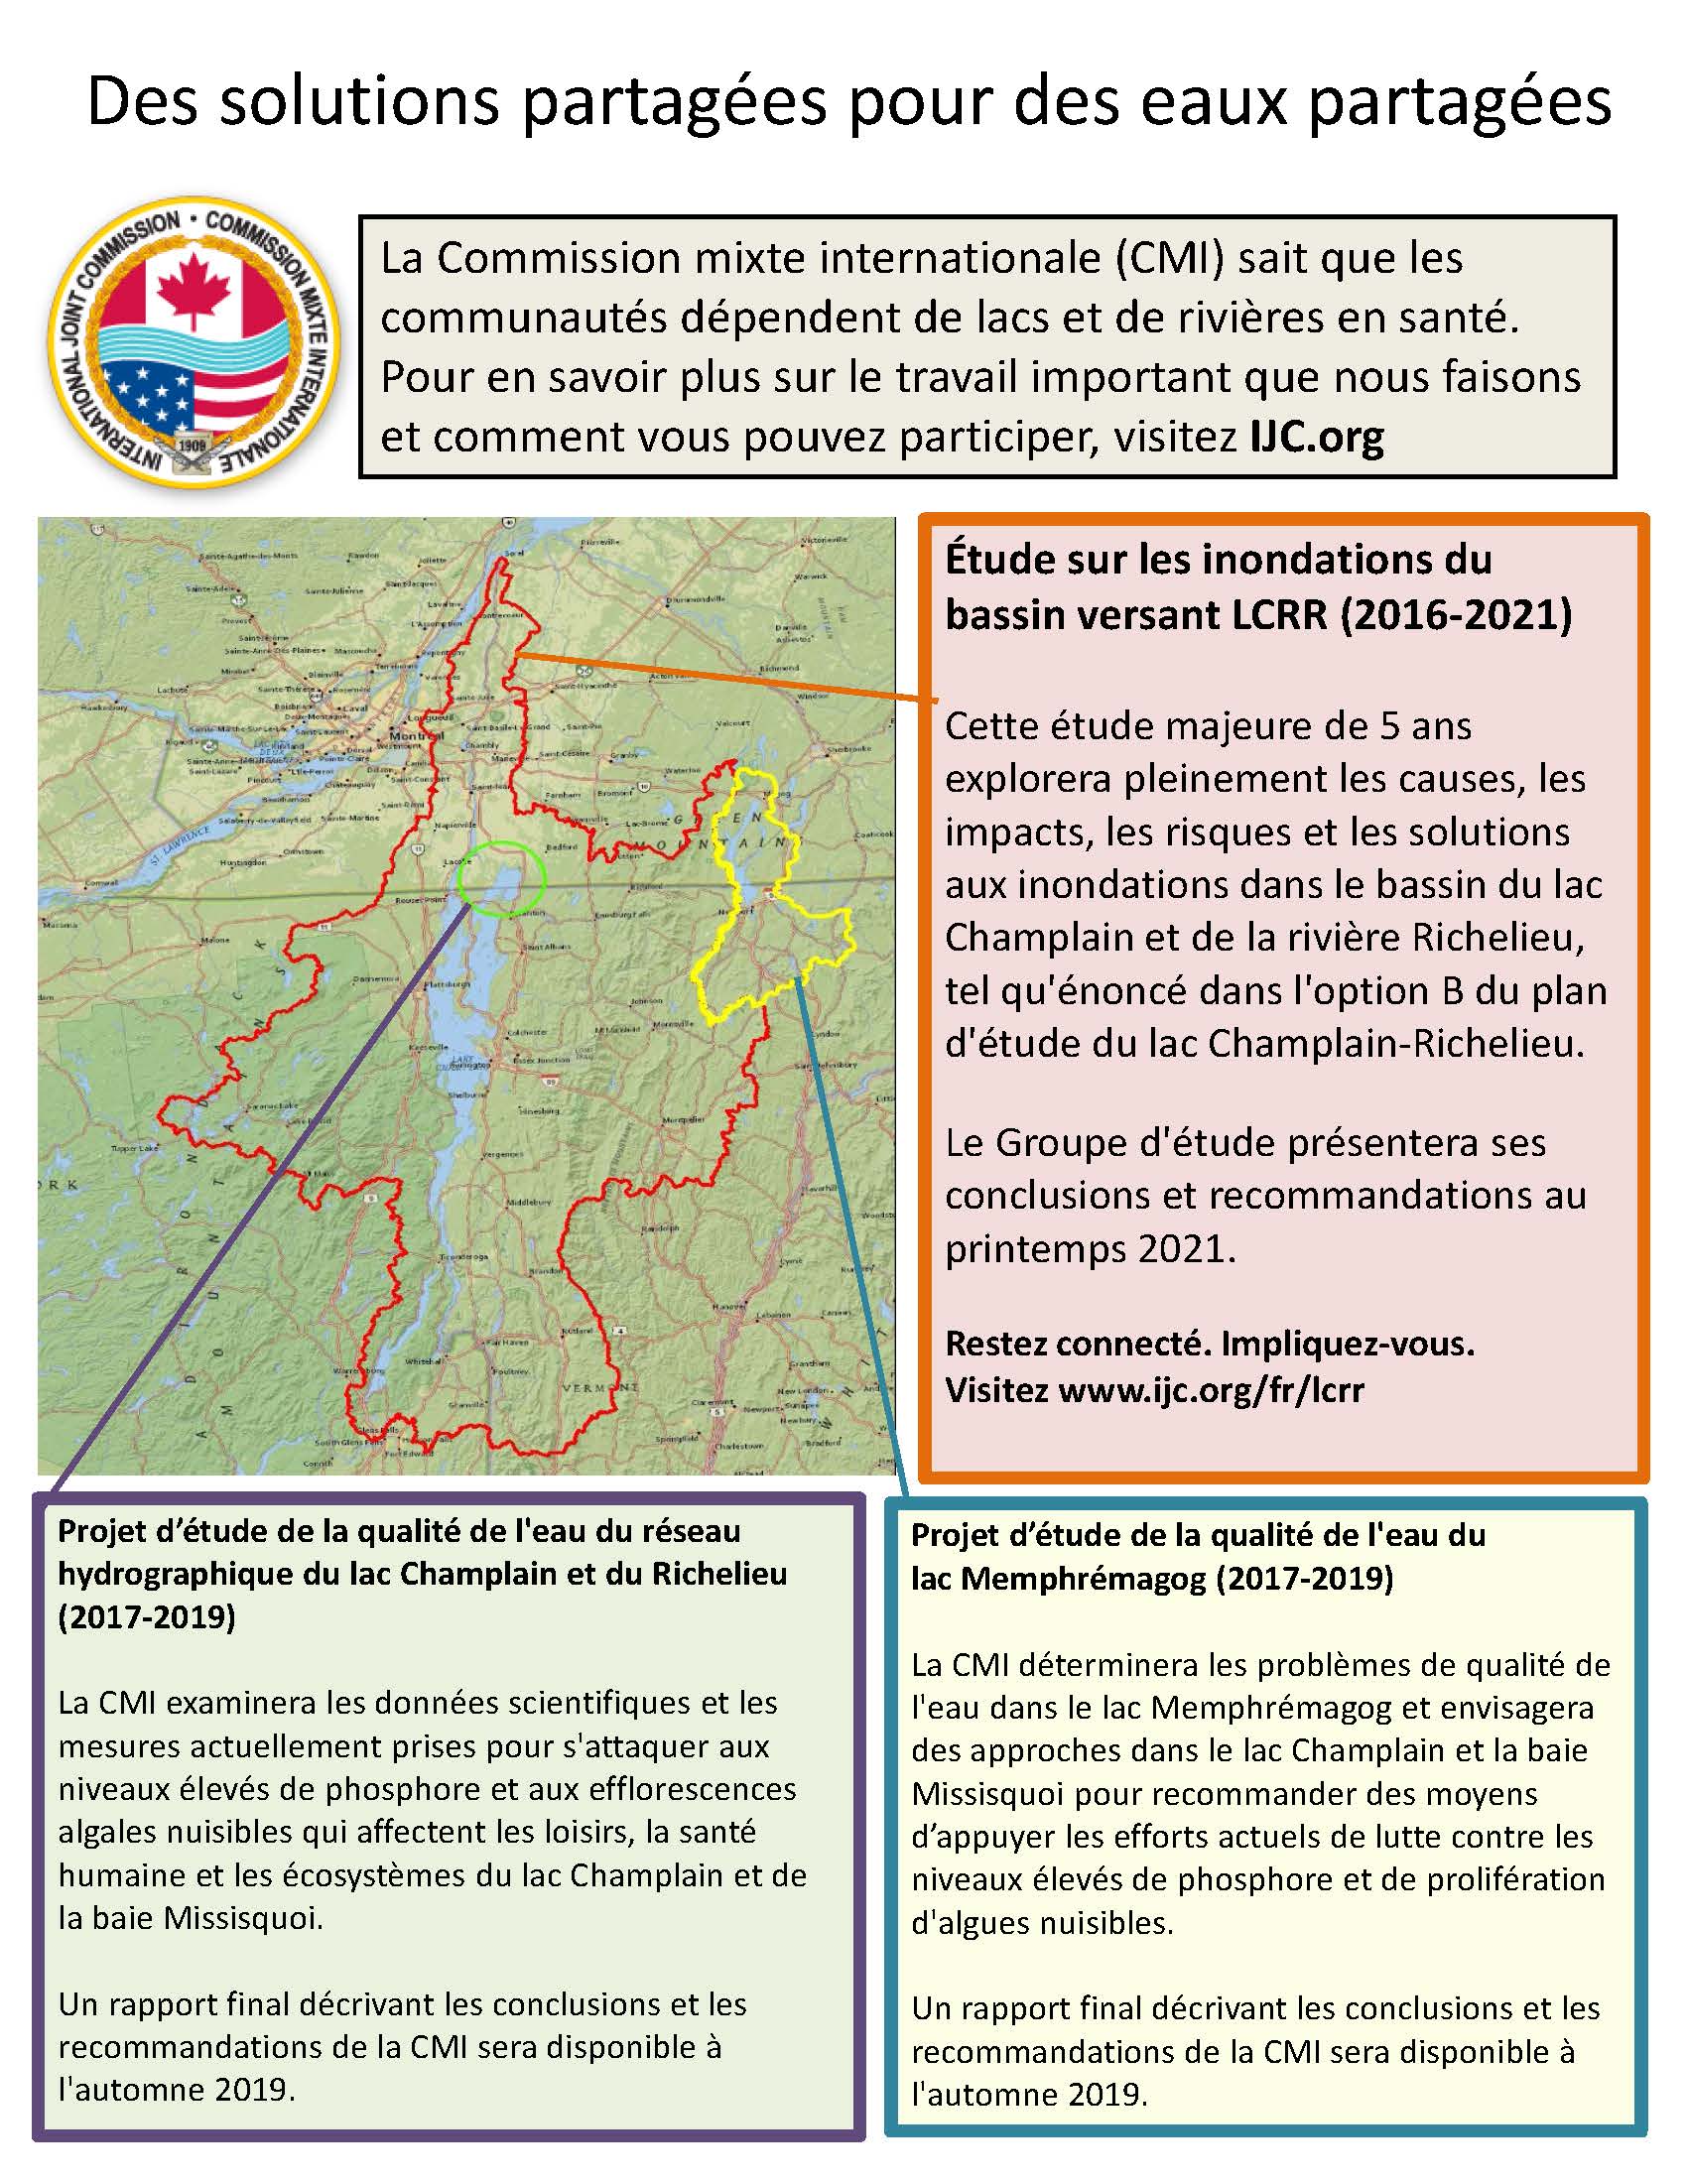 Infographique des solutions partagées pour des eaux partagées des bassins versants du lac Champlain et de la rivière Richelieu et le lac Memphrémagog